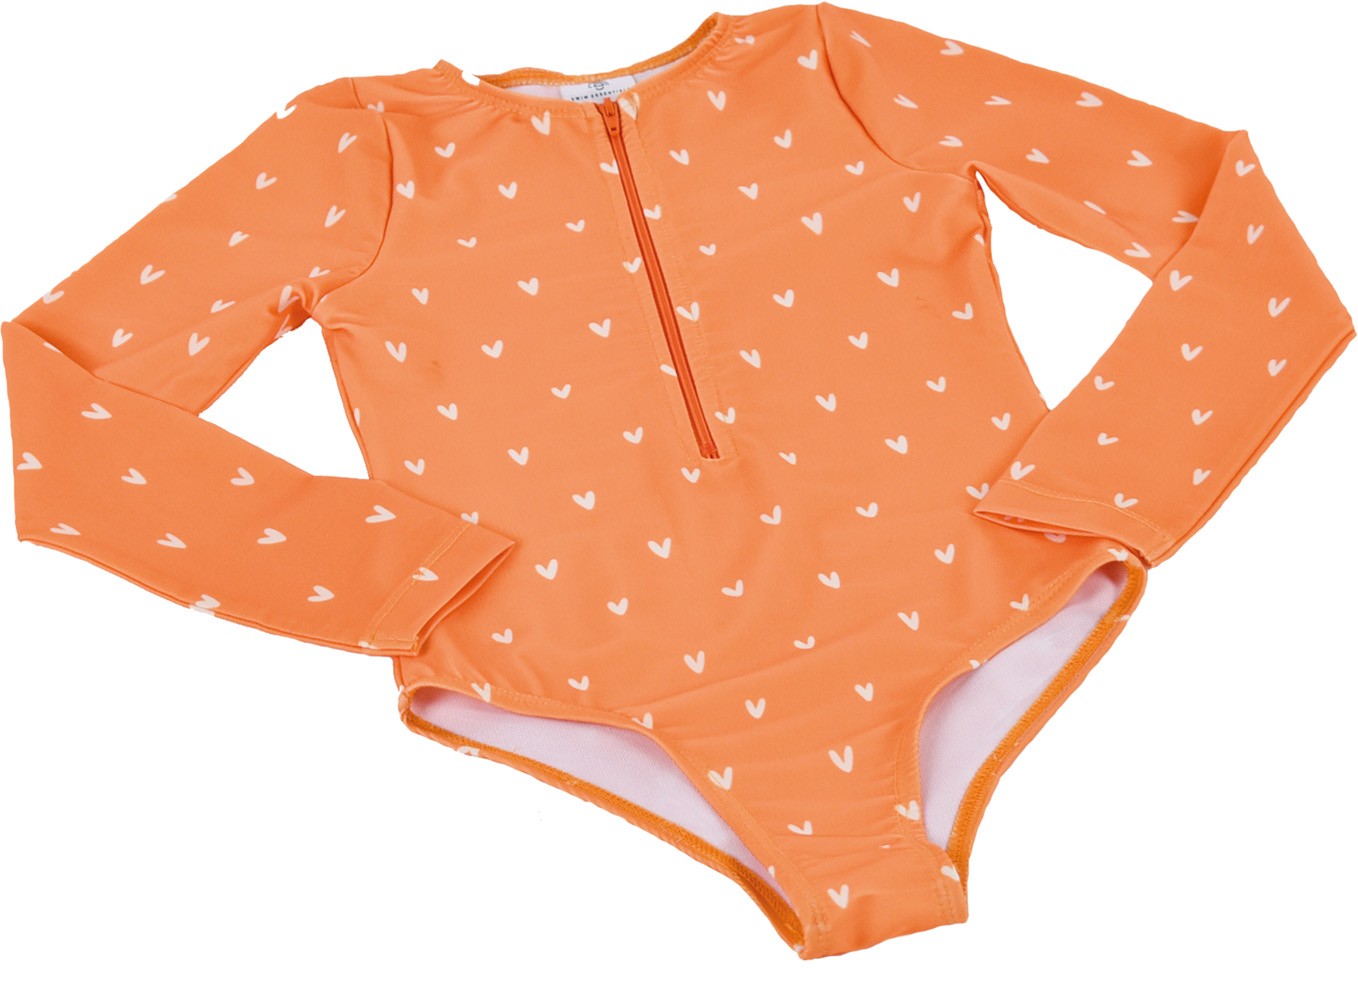 Swim Essentials | Schwimmanzug Mädchen 98/104 | Orange Hearts